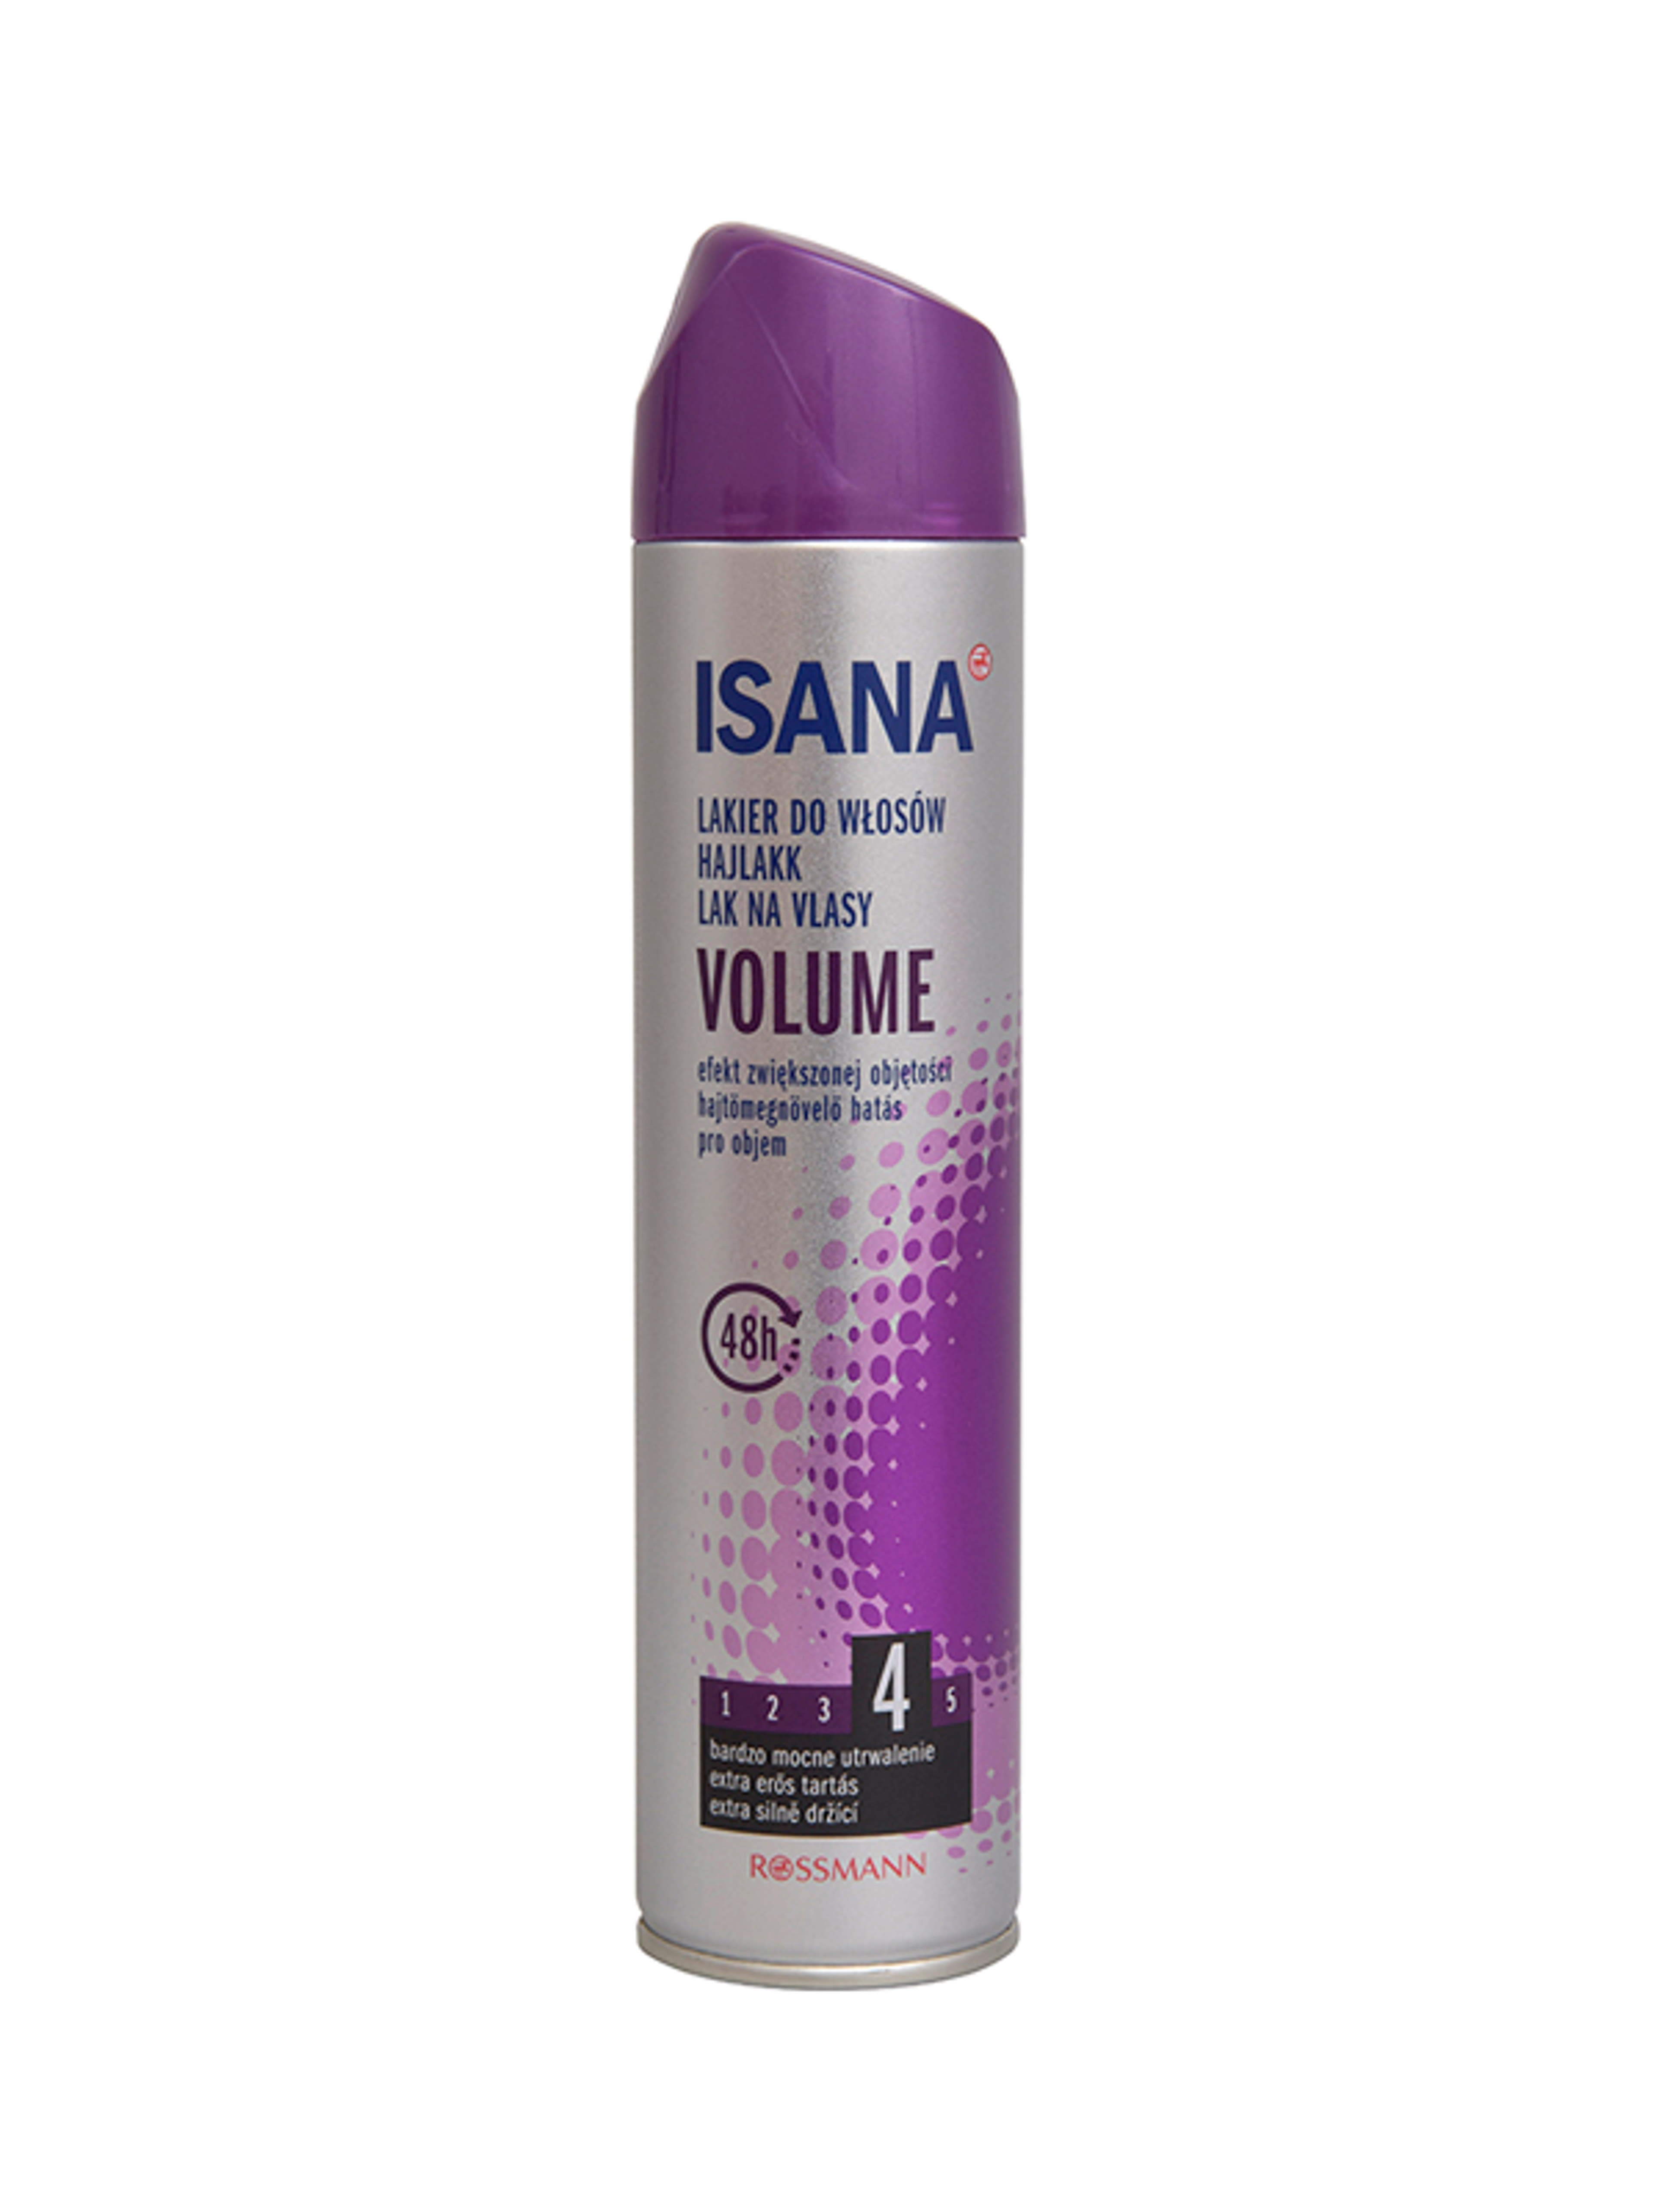 Isana Hair Volume Up hajlakk - 250 ml-2